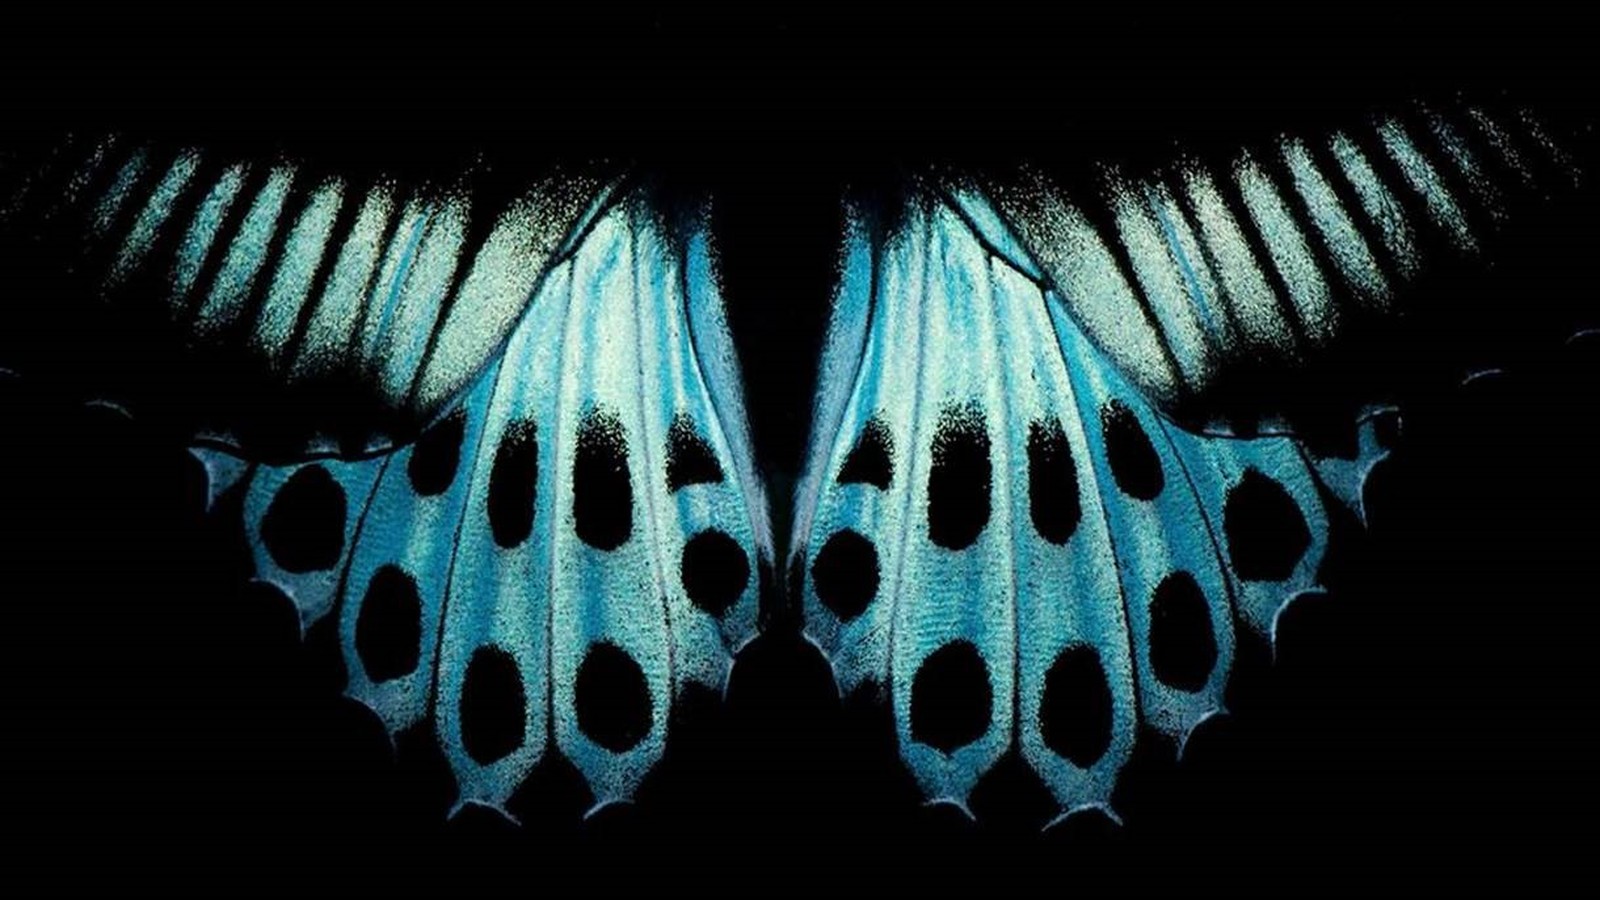 Padrão nas asas da borboleta conhecida como 'Blue Mormon', encontrada no sul da Índia e em Sri Lanka (Foto: PRATIK PRADHAN/Royal Photographic Society)